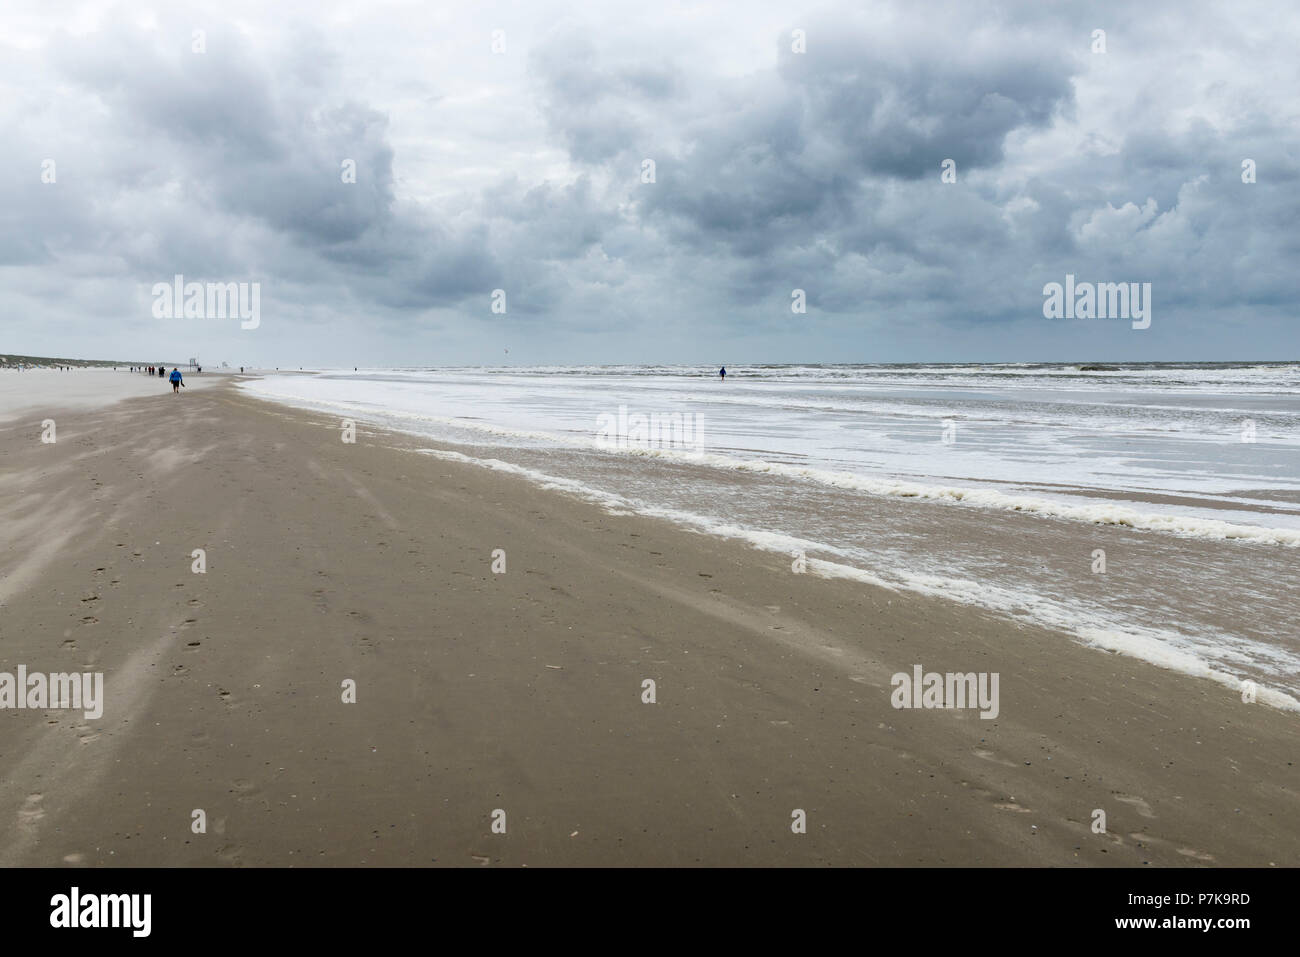 Germany, Lower Saxony, East Frisia, Juist, beach walk in stormy weather. Stock Photo